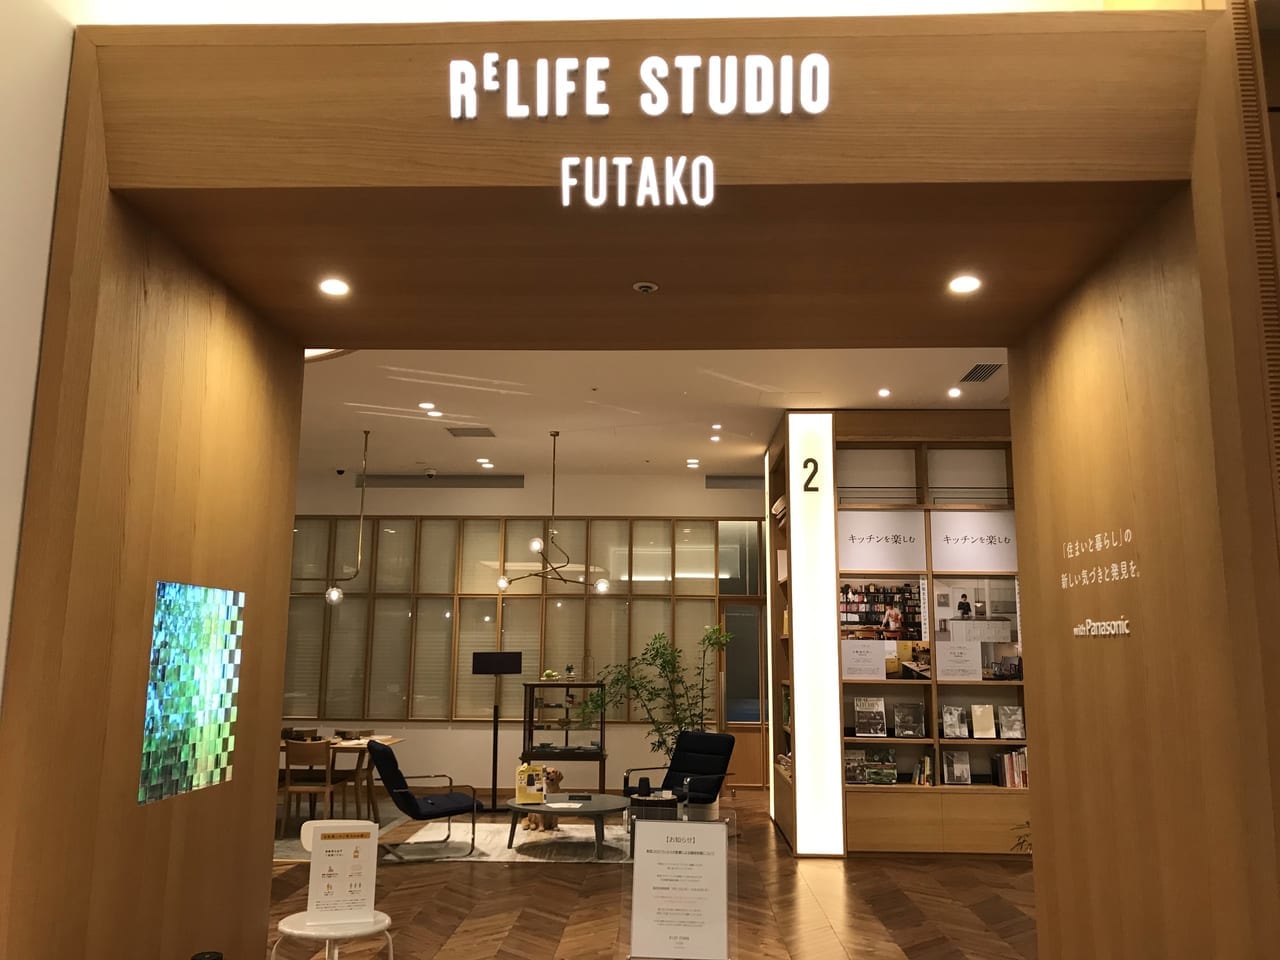 世田谷区二子玉川ライズ蔦屋家電RELIFE STUDIO FUTAKOは2021年12月26日閉店します。